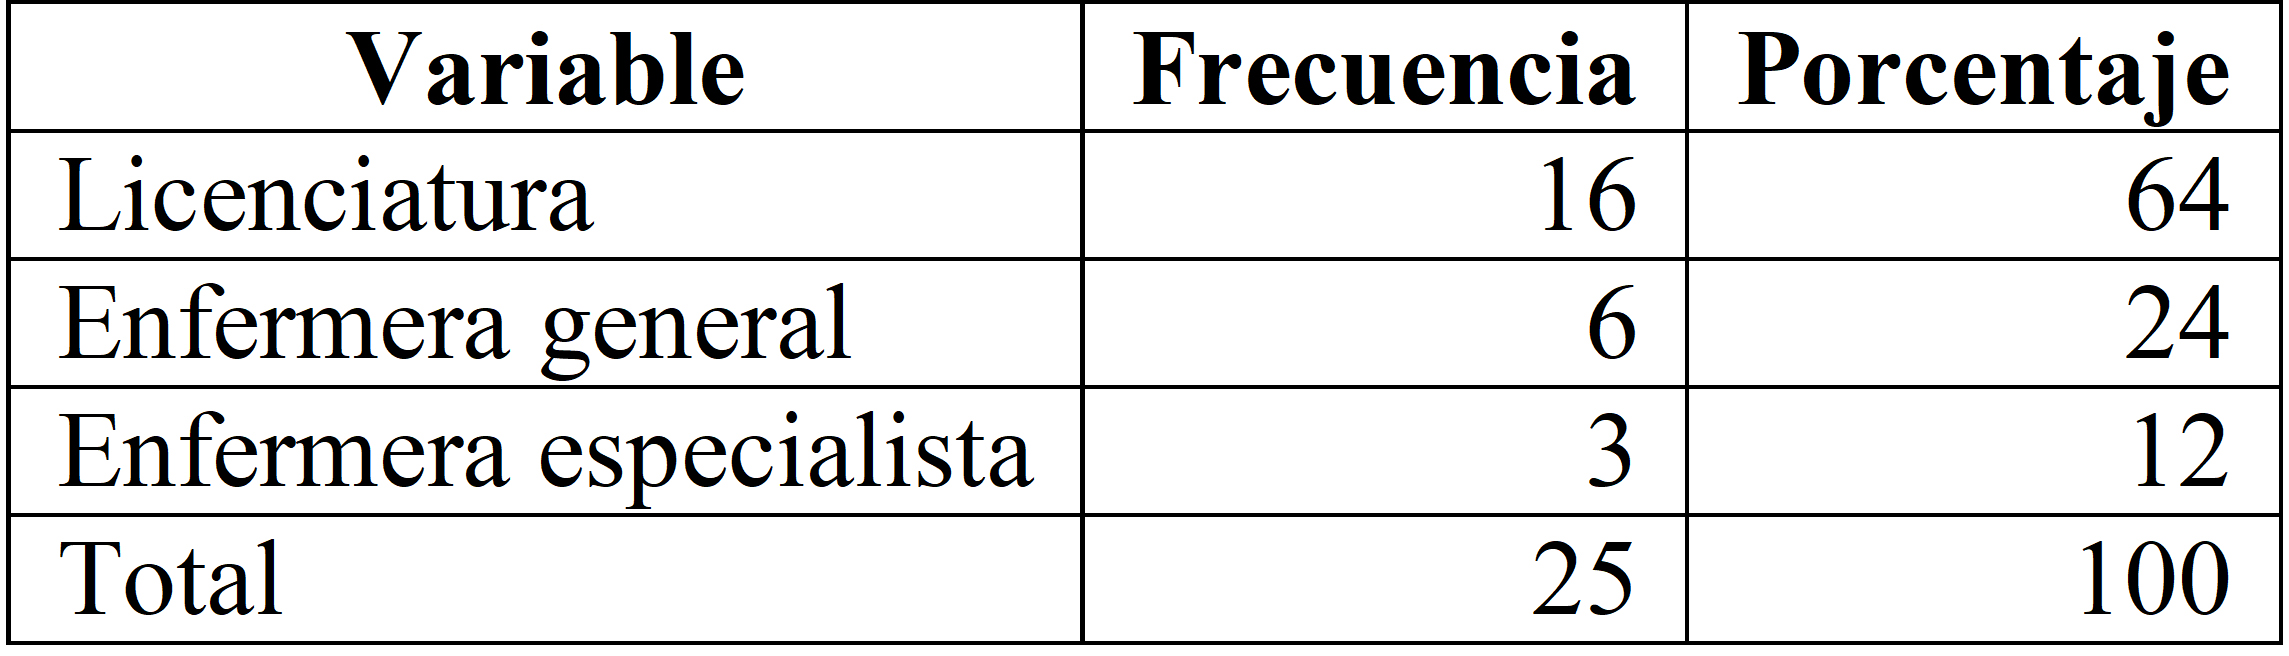 
Perfil académico de enfermería de un hospital de
alta especialidad, México, 2014
